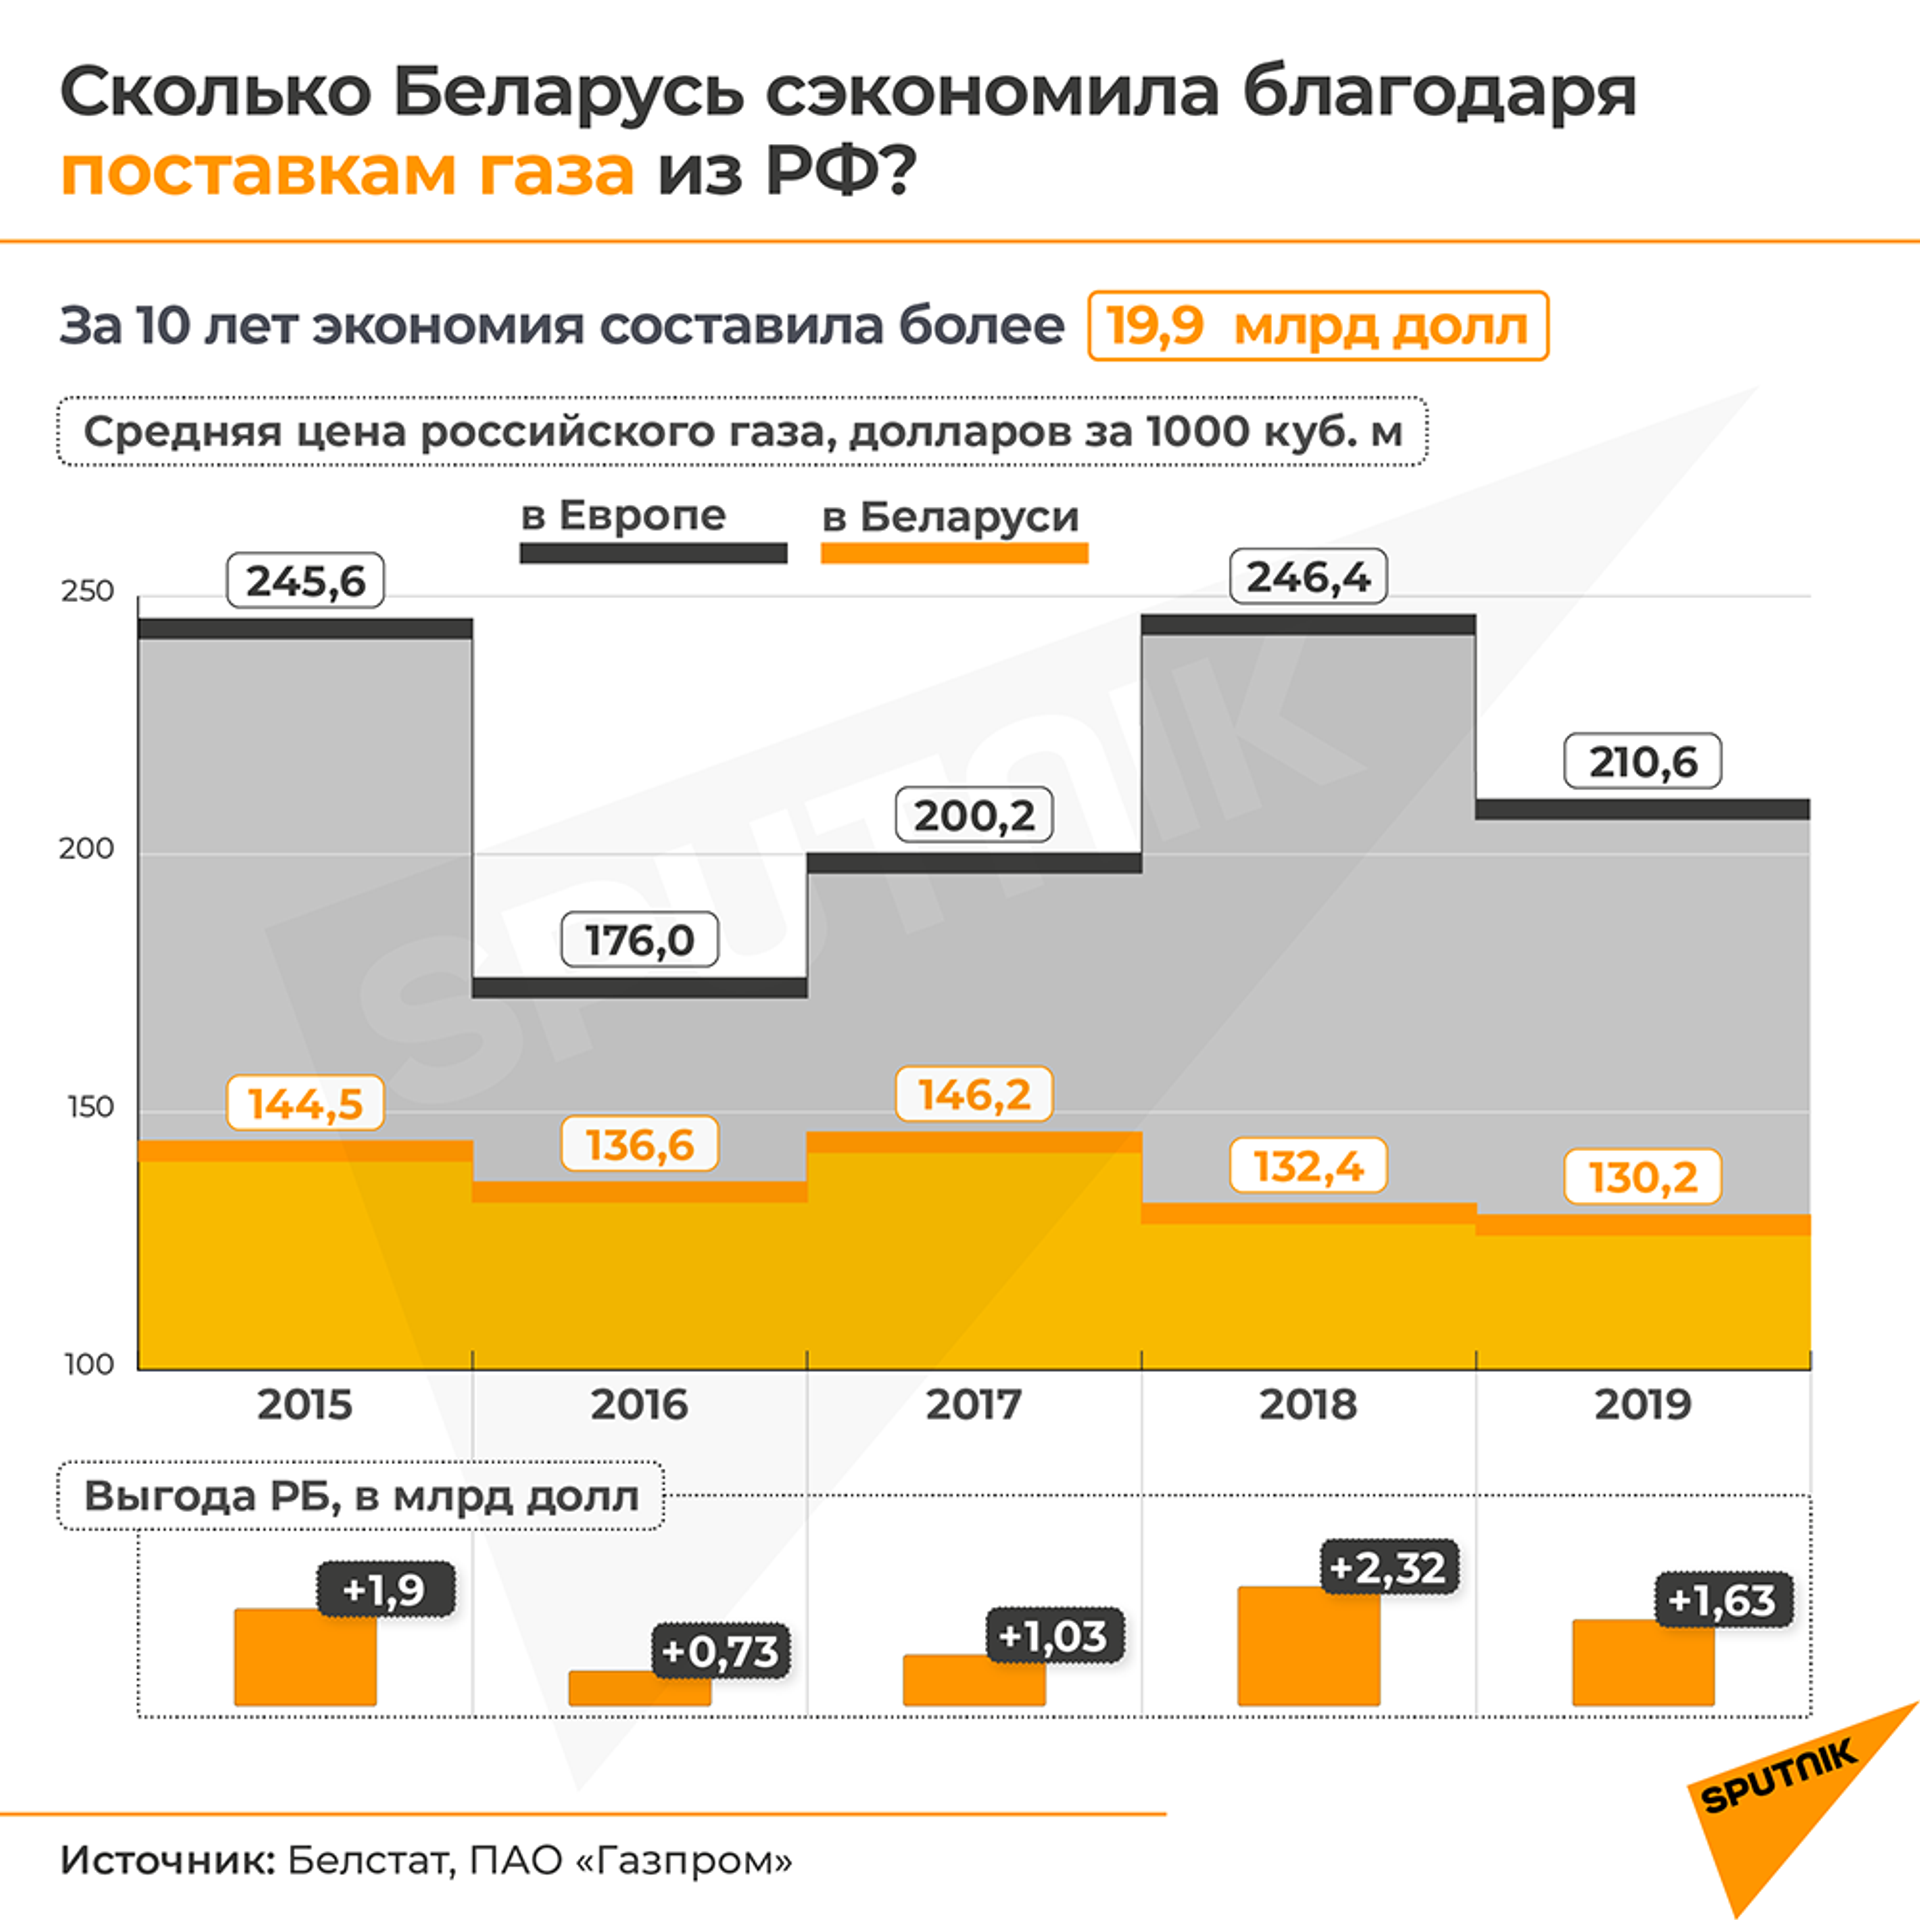 Изменения в соглашении по поставкам газа из РФ будут технического характера - Sputnik Беларусь, 1920, 17.03.2021